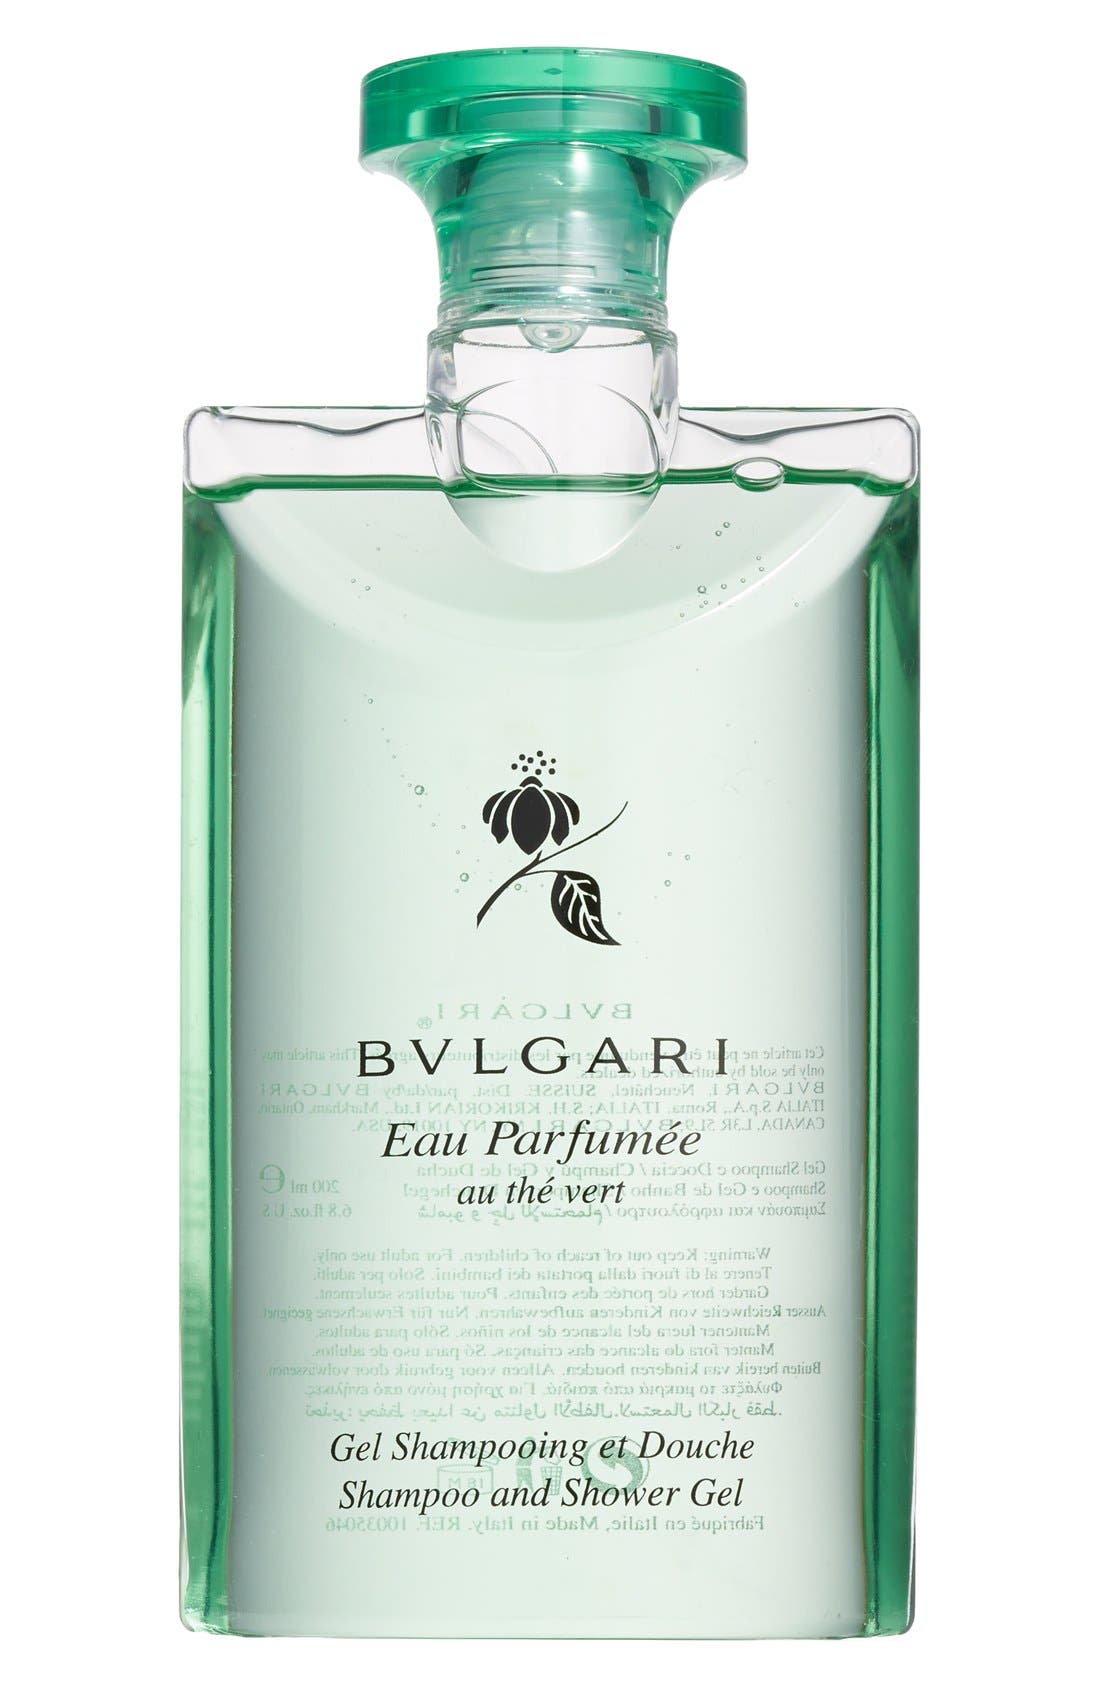 bvlgari shampoo price